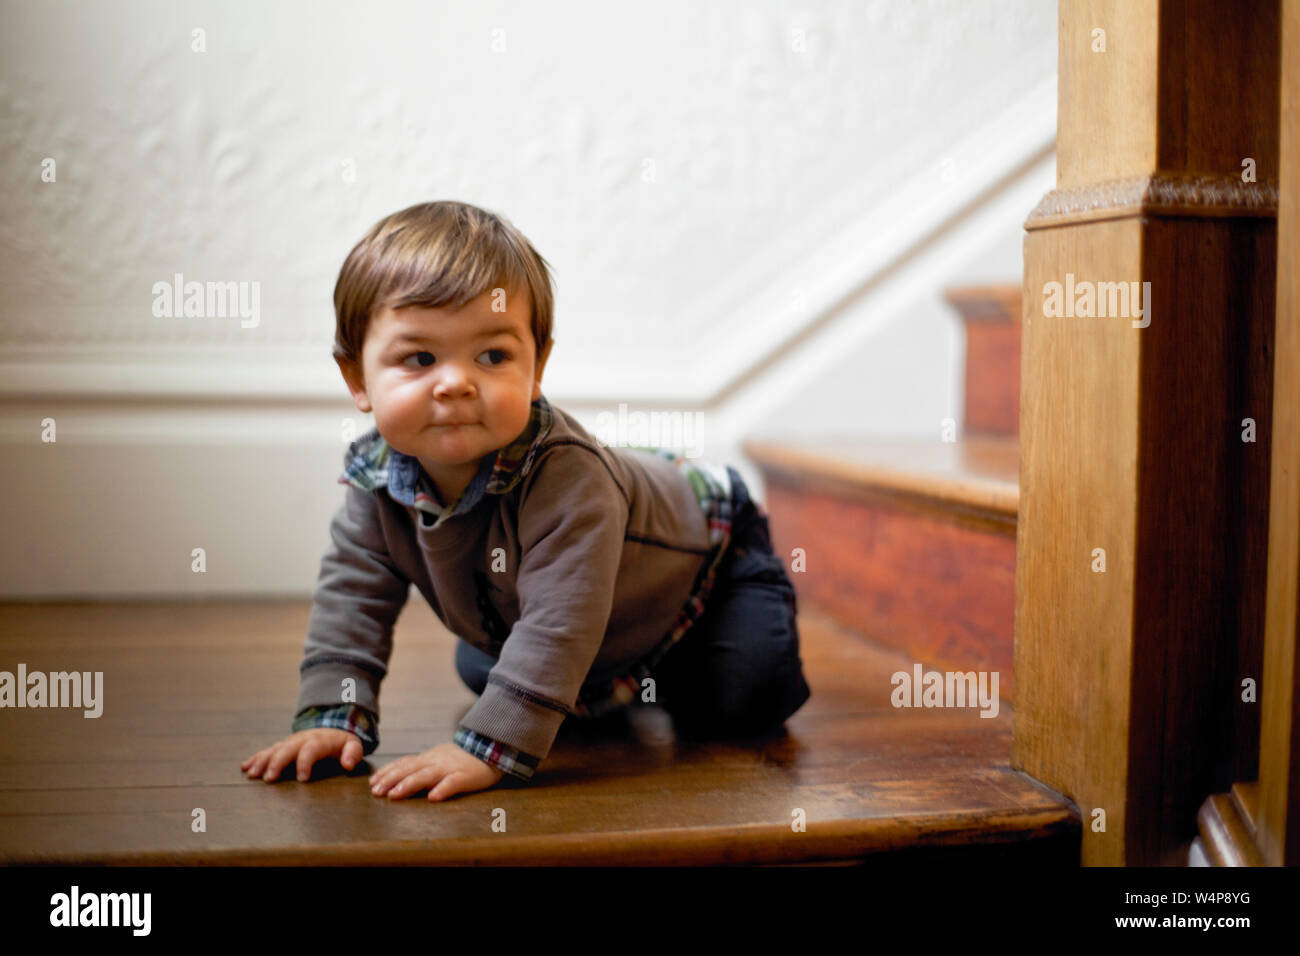 Baby Boy kriechen auf die Landung auf einer Treppe. Stockfoto